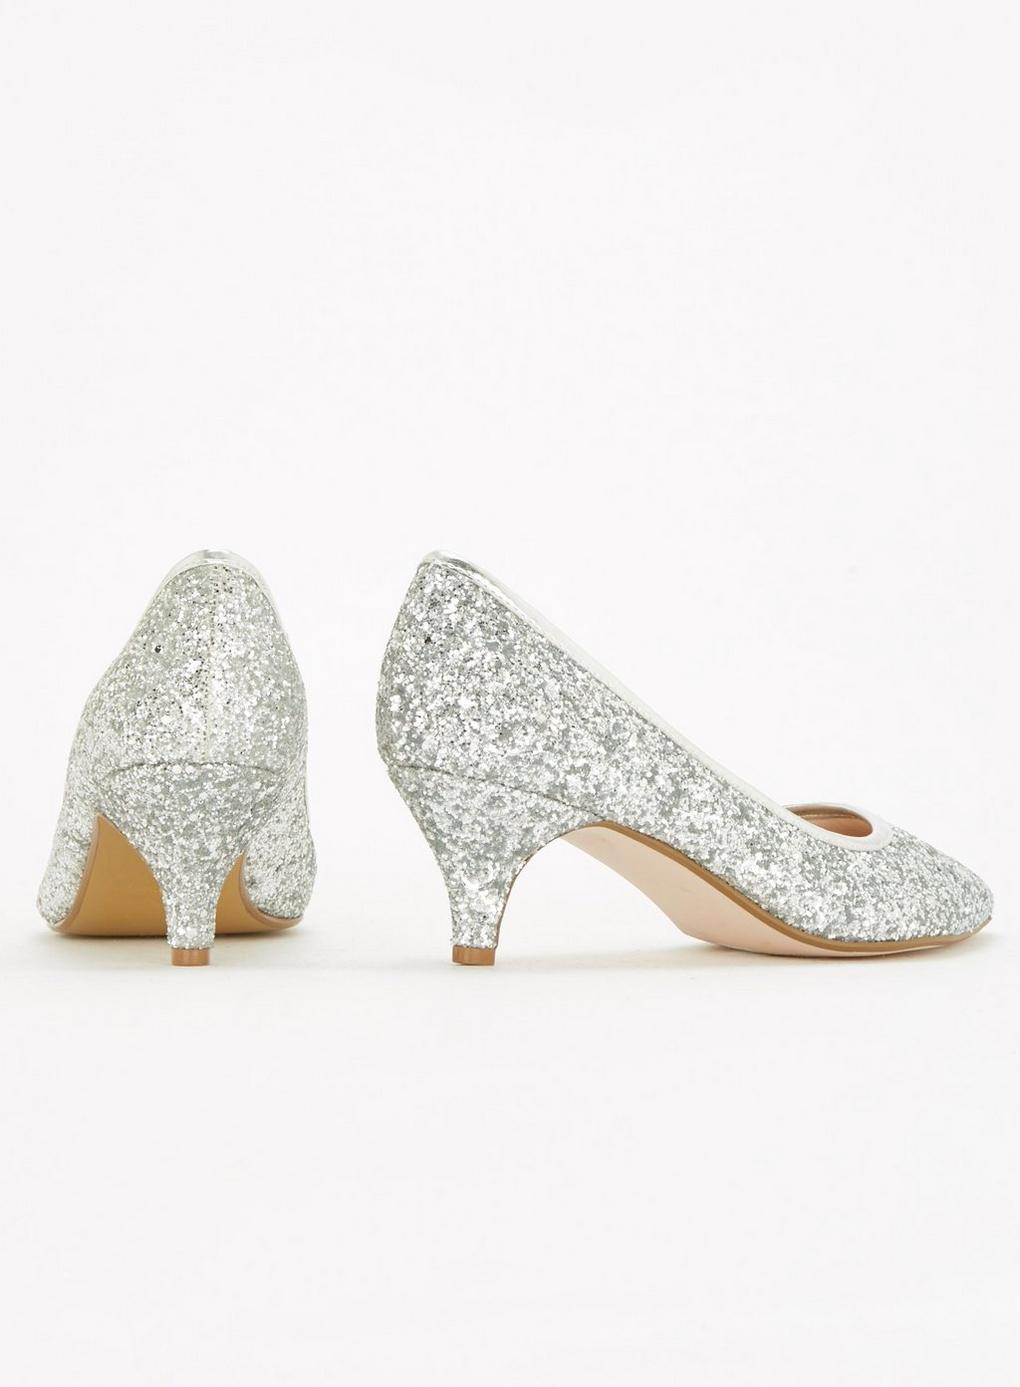 wide fit silver glitter heels